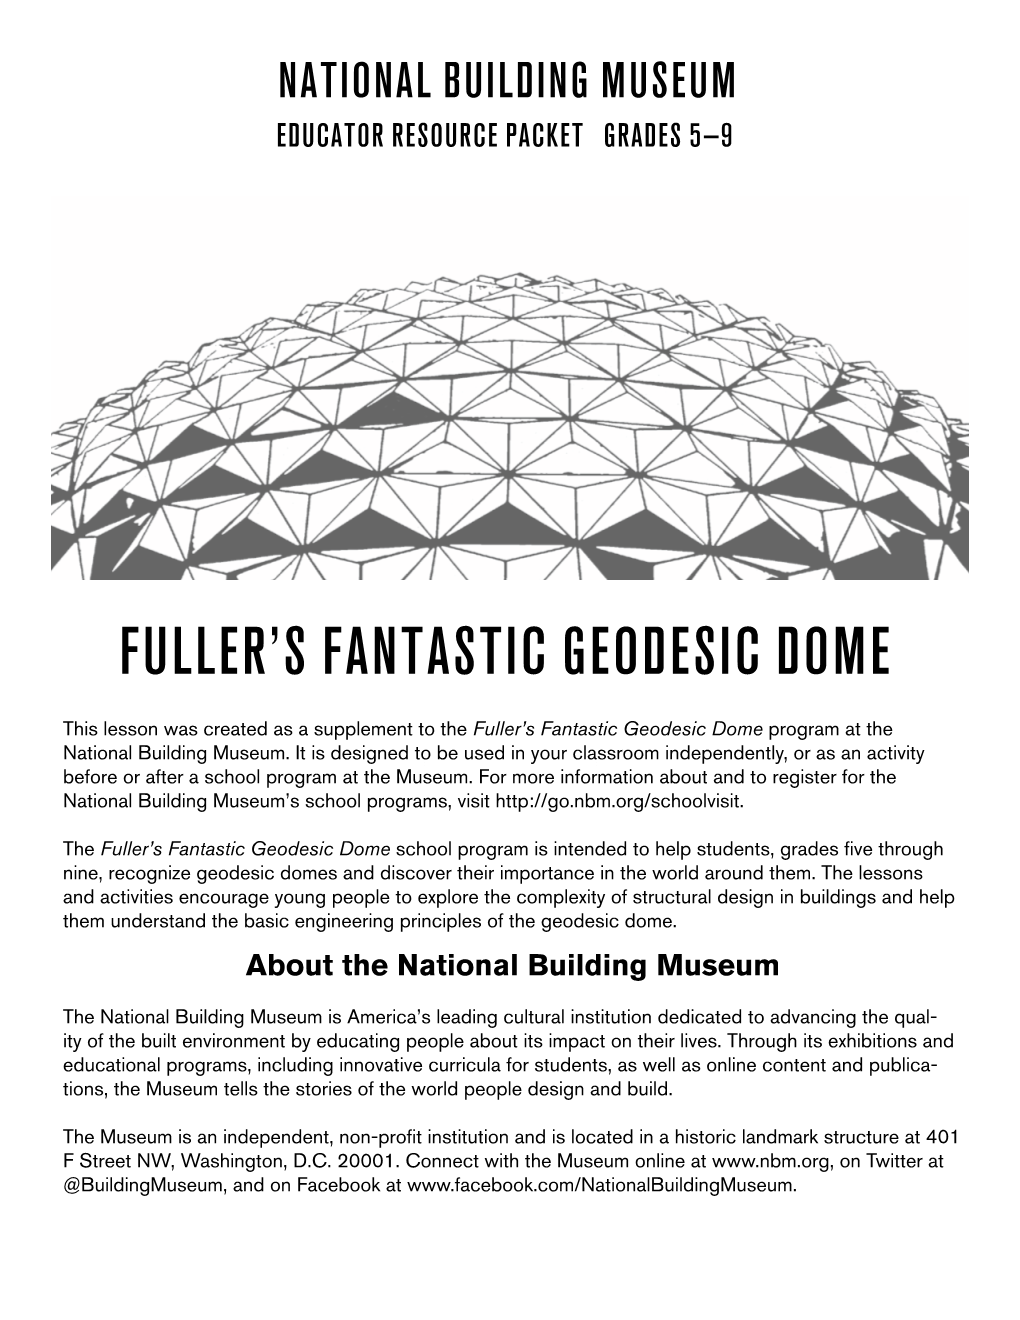 Fuller's Fantastic Geodesic Dome